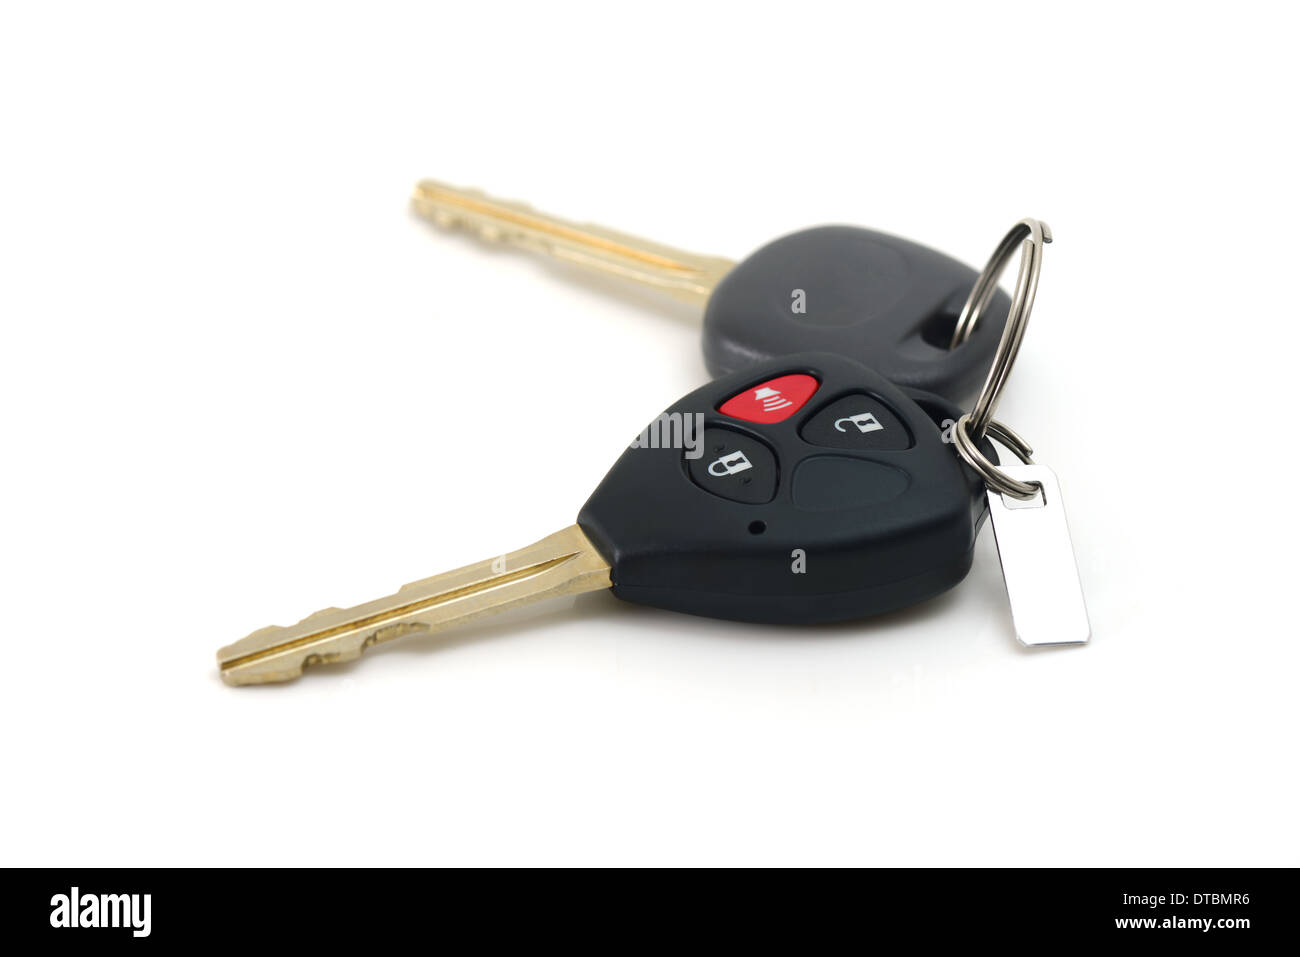 Mazda Klappschlüssel Gehäuse mit 2 Tasten - Mr Key